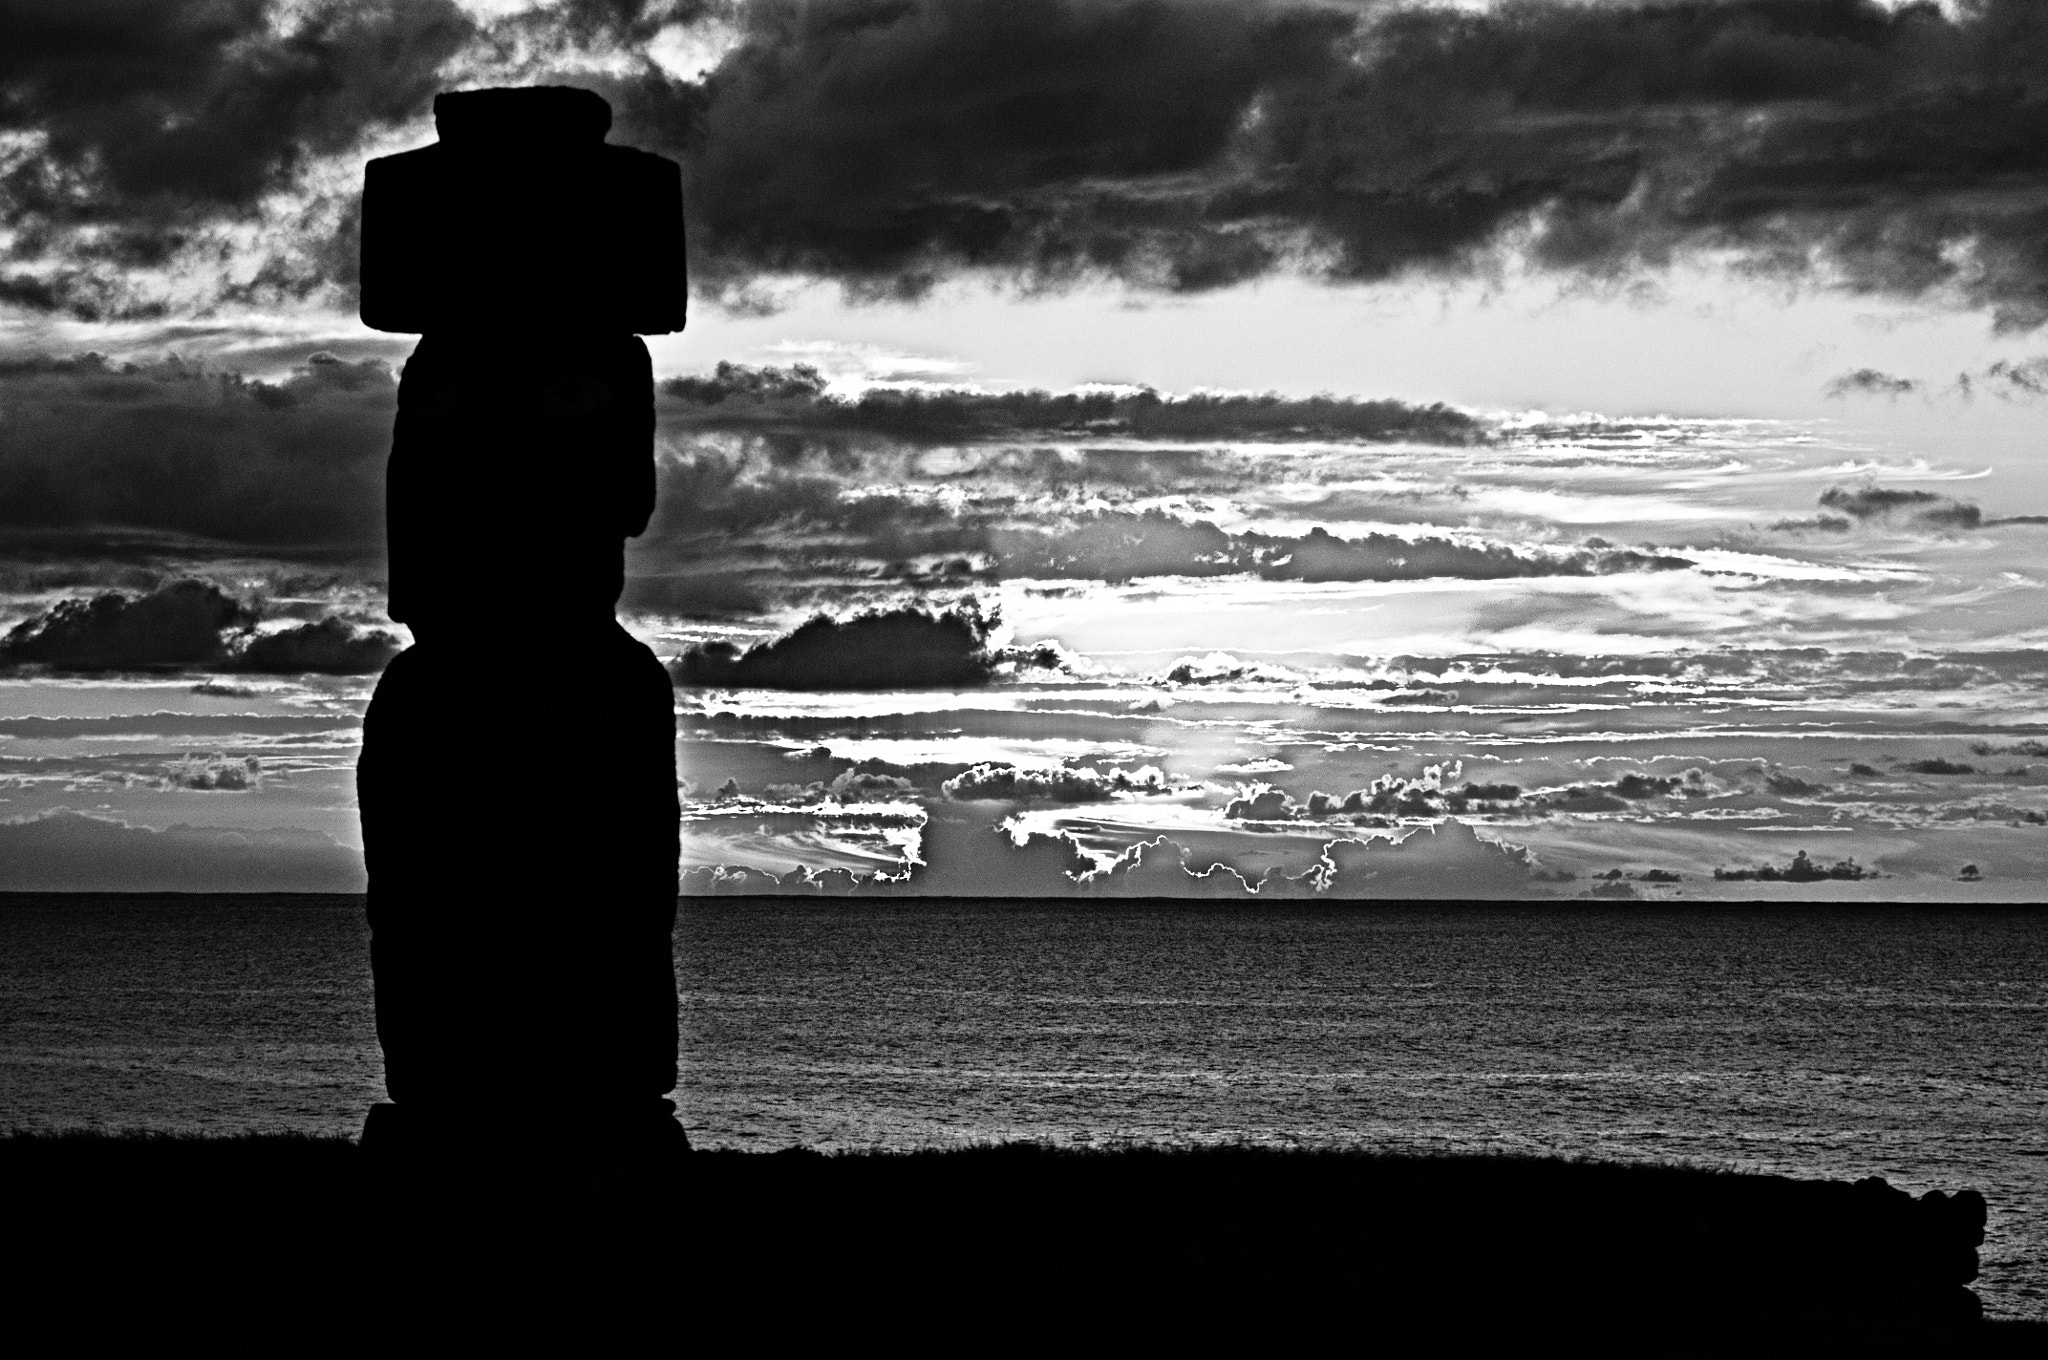 Nikon D300 + Nikon AF Zoom-Nikkor 80-200mm f/2.8D ED sample photo. Easter island photography